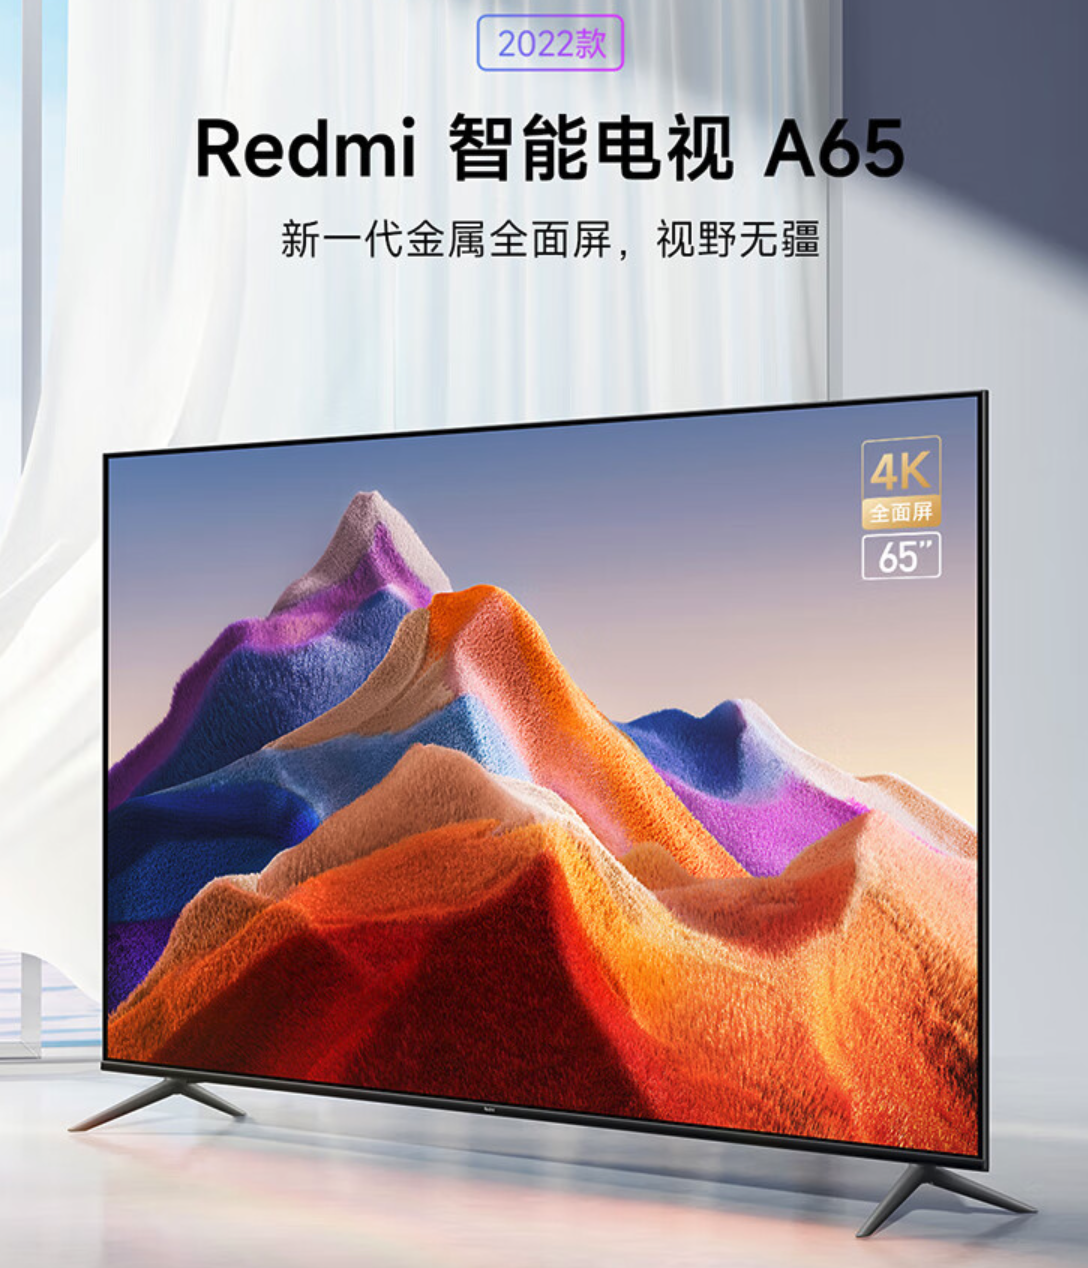 Почти даром: Xiaomi представила в Китае 65-дюймовый 4К-телевизор за 19 тысяч рублей